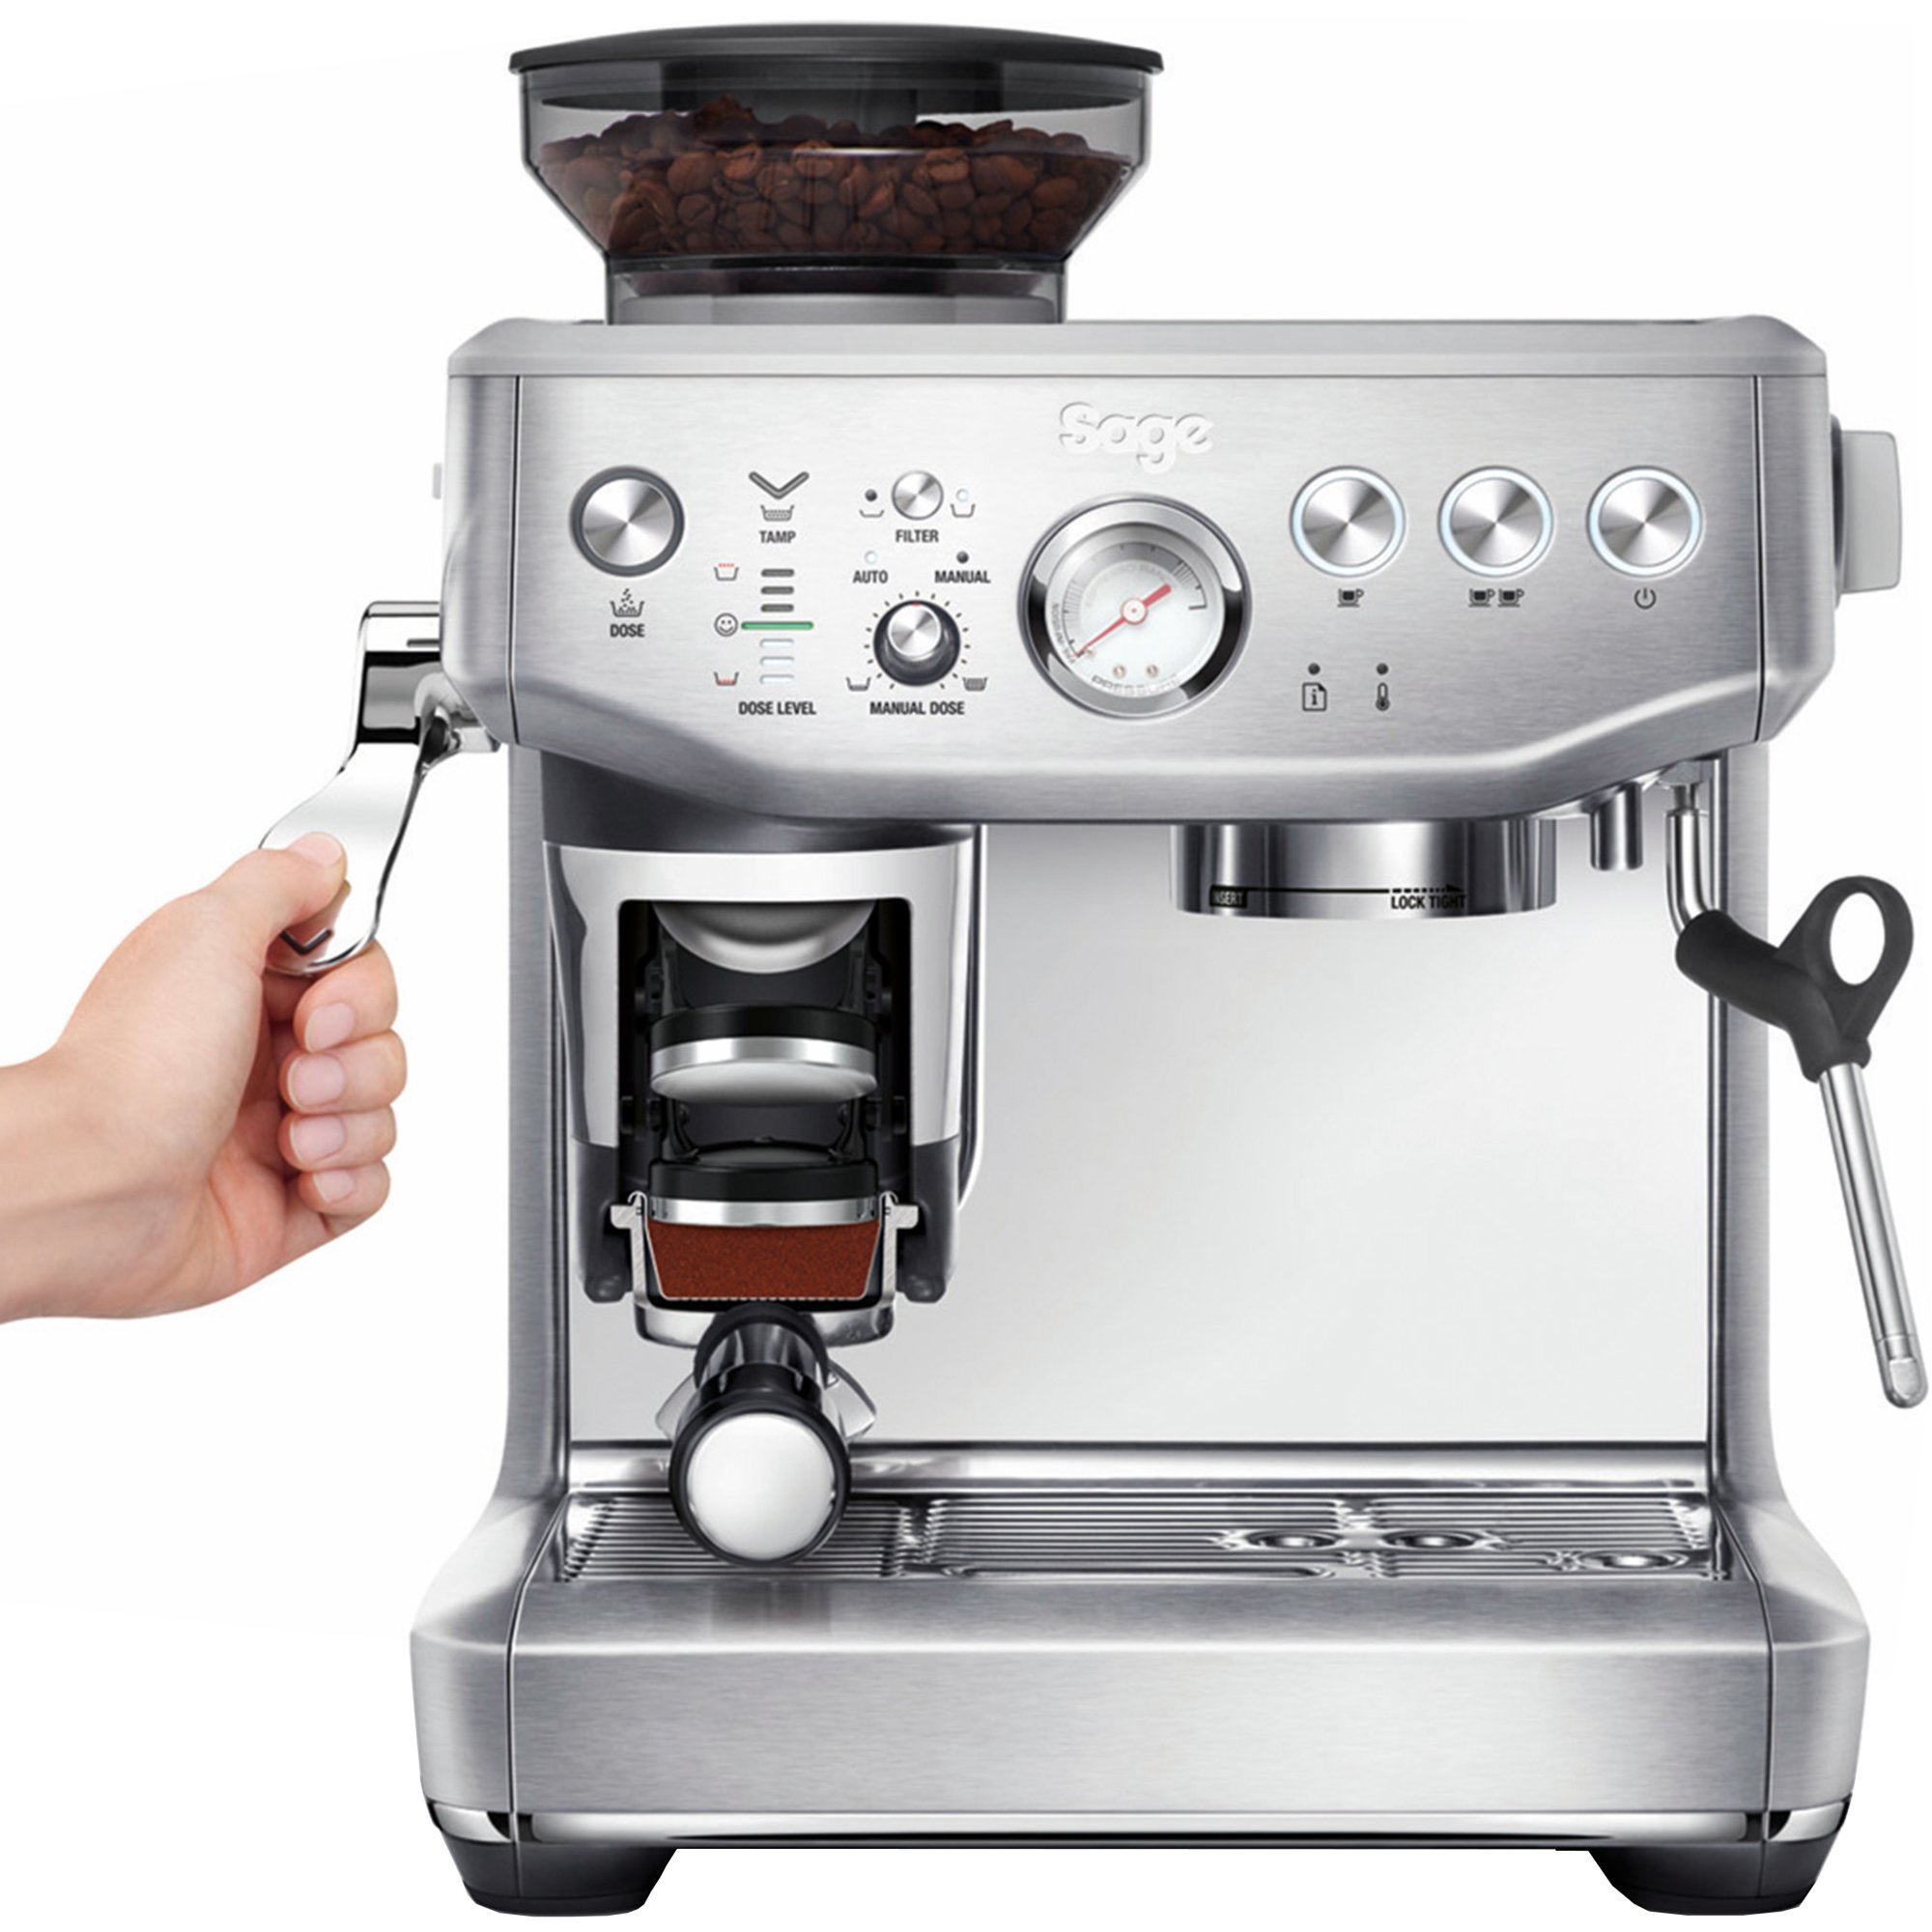 ekspedition Lav vej færge Bedste Espressomaskine - 4 Espressomaskiner Til God Kaffe